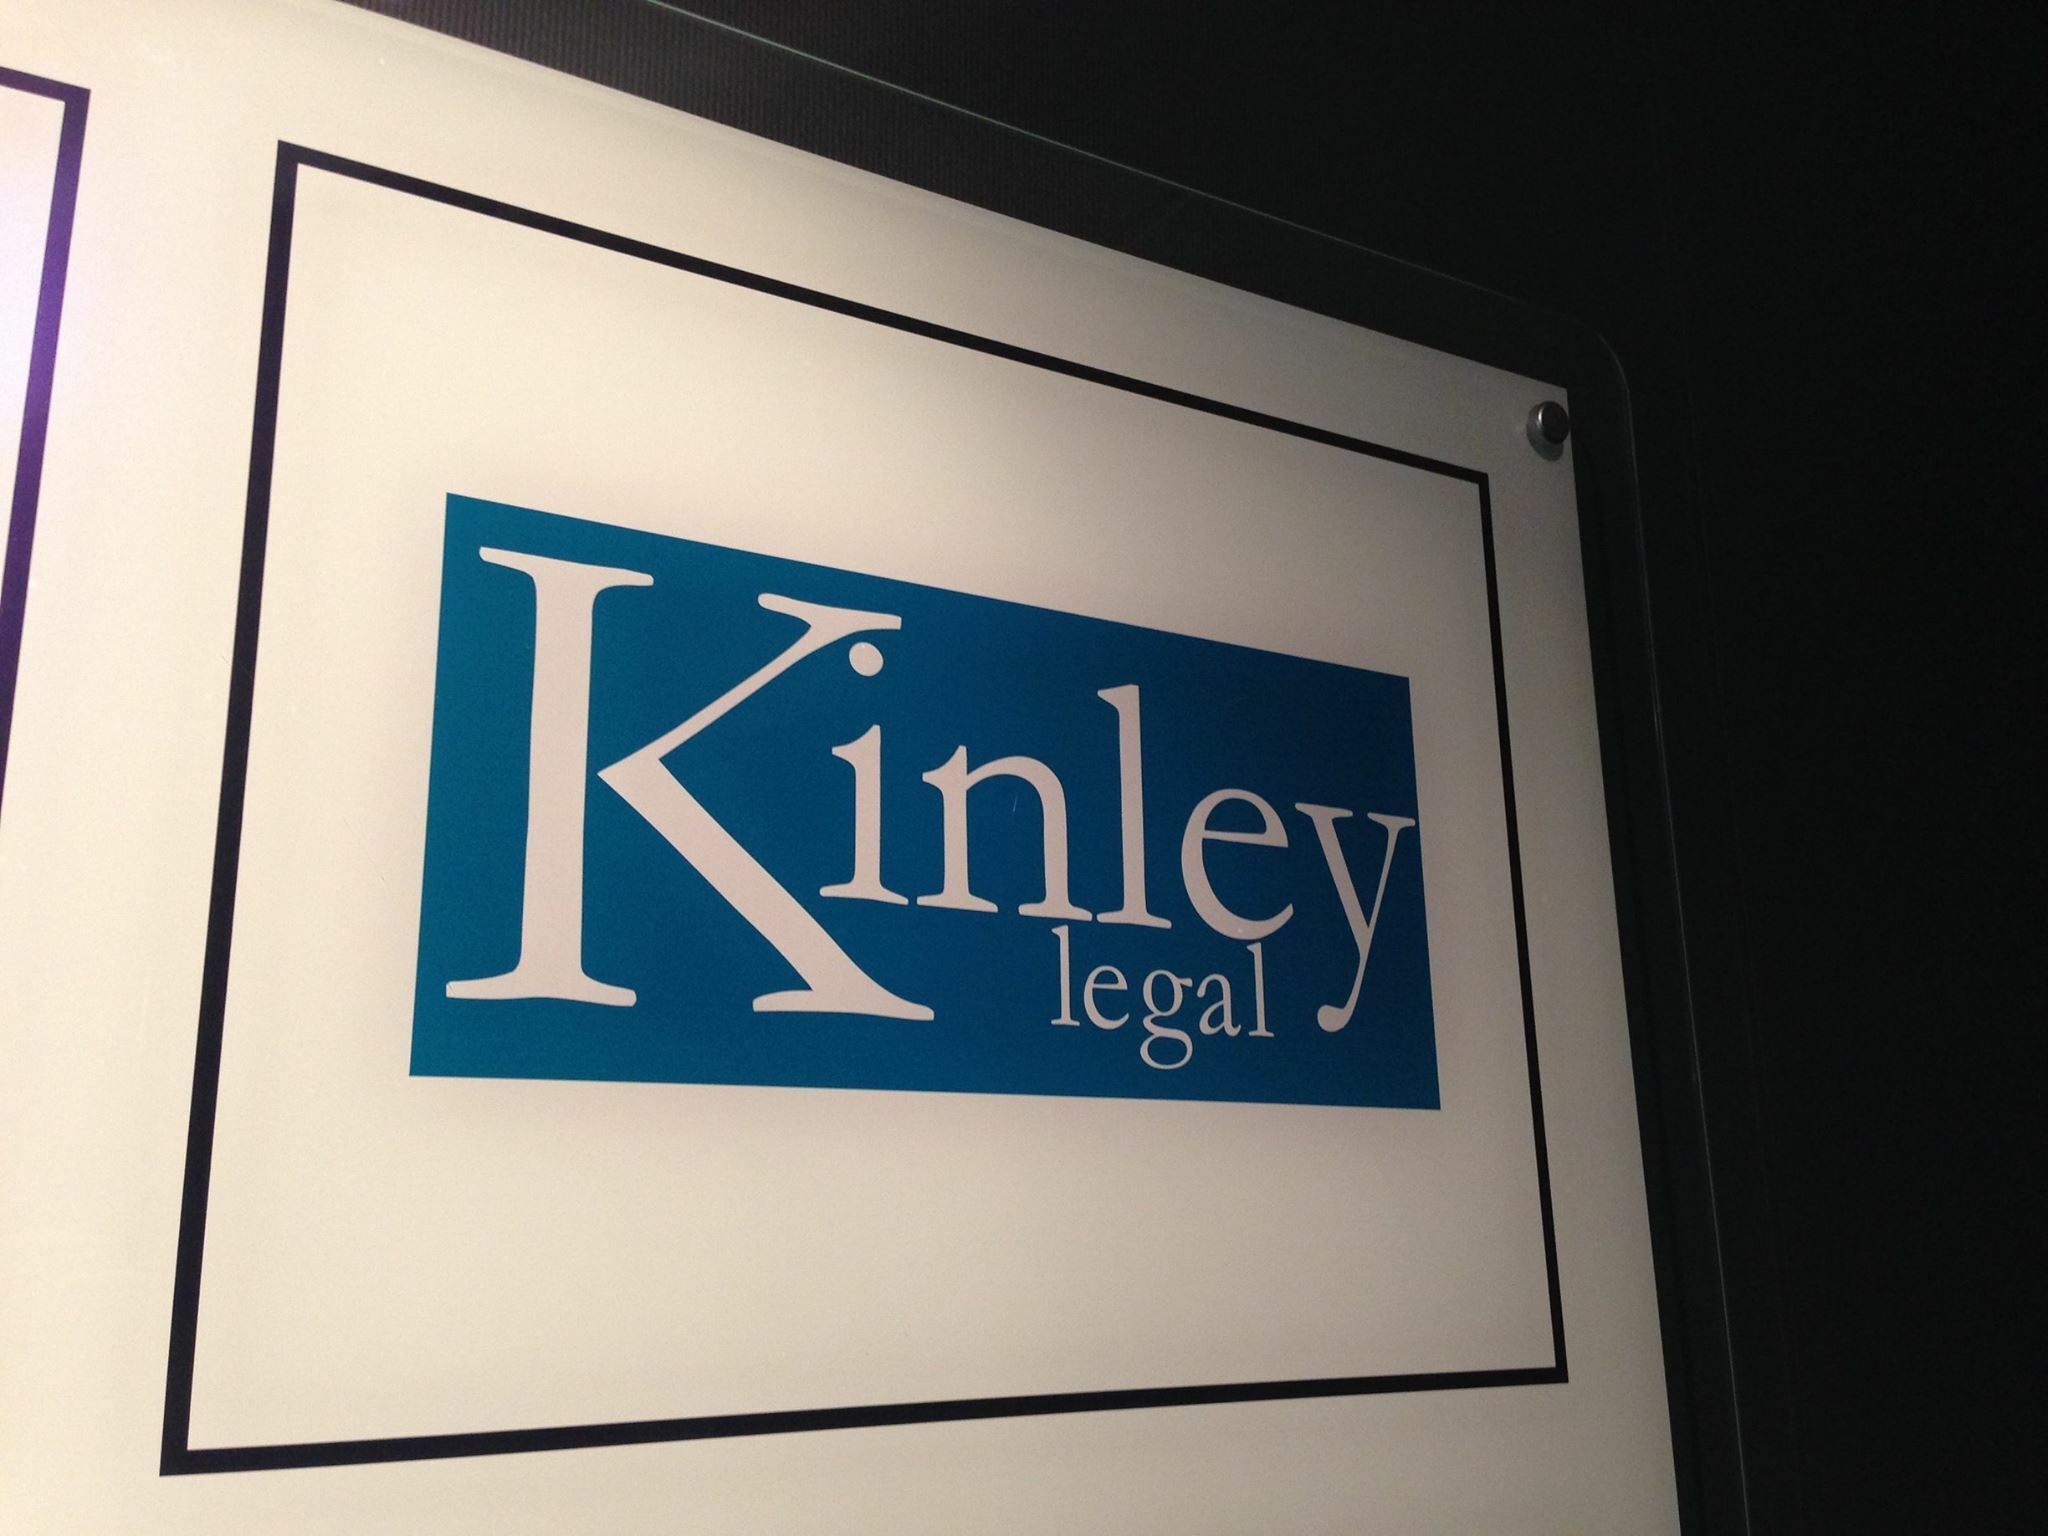 Kinley Legal